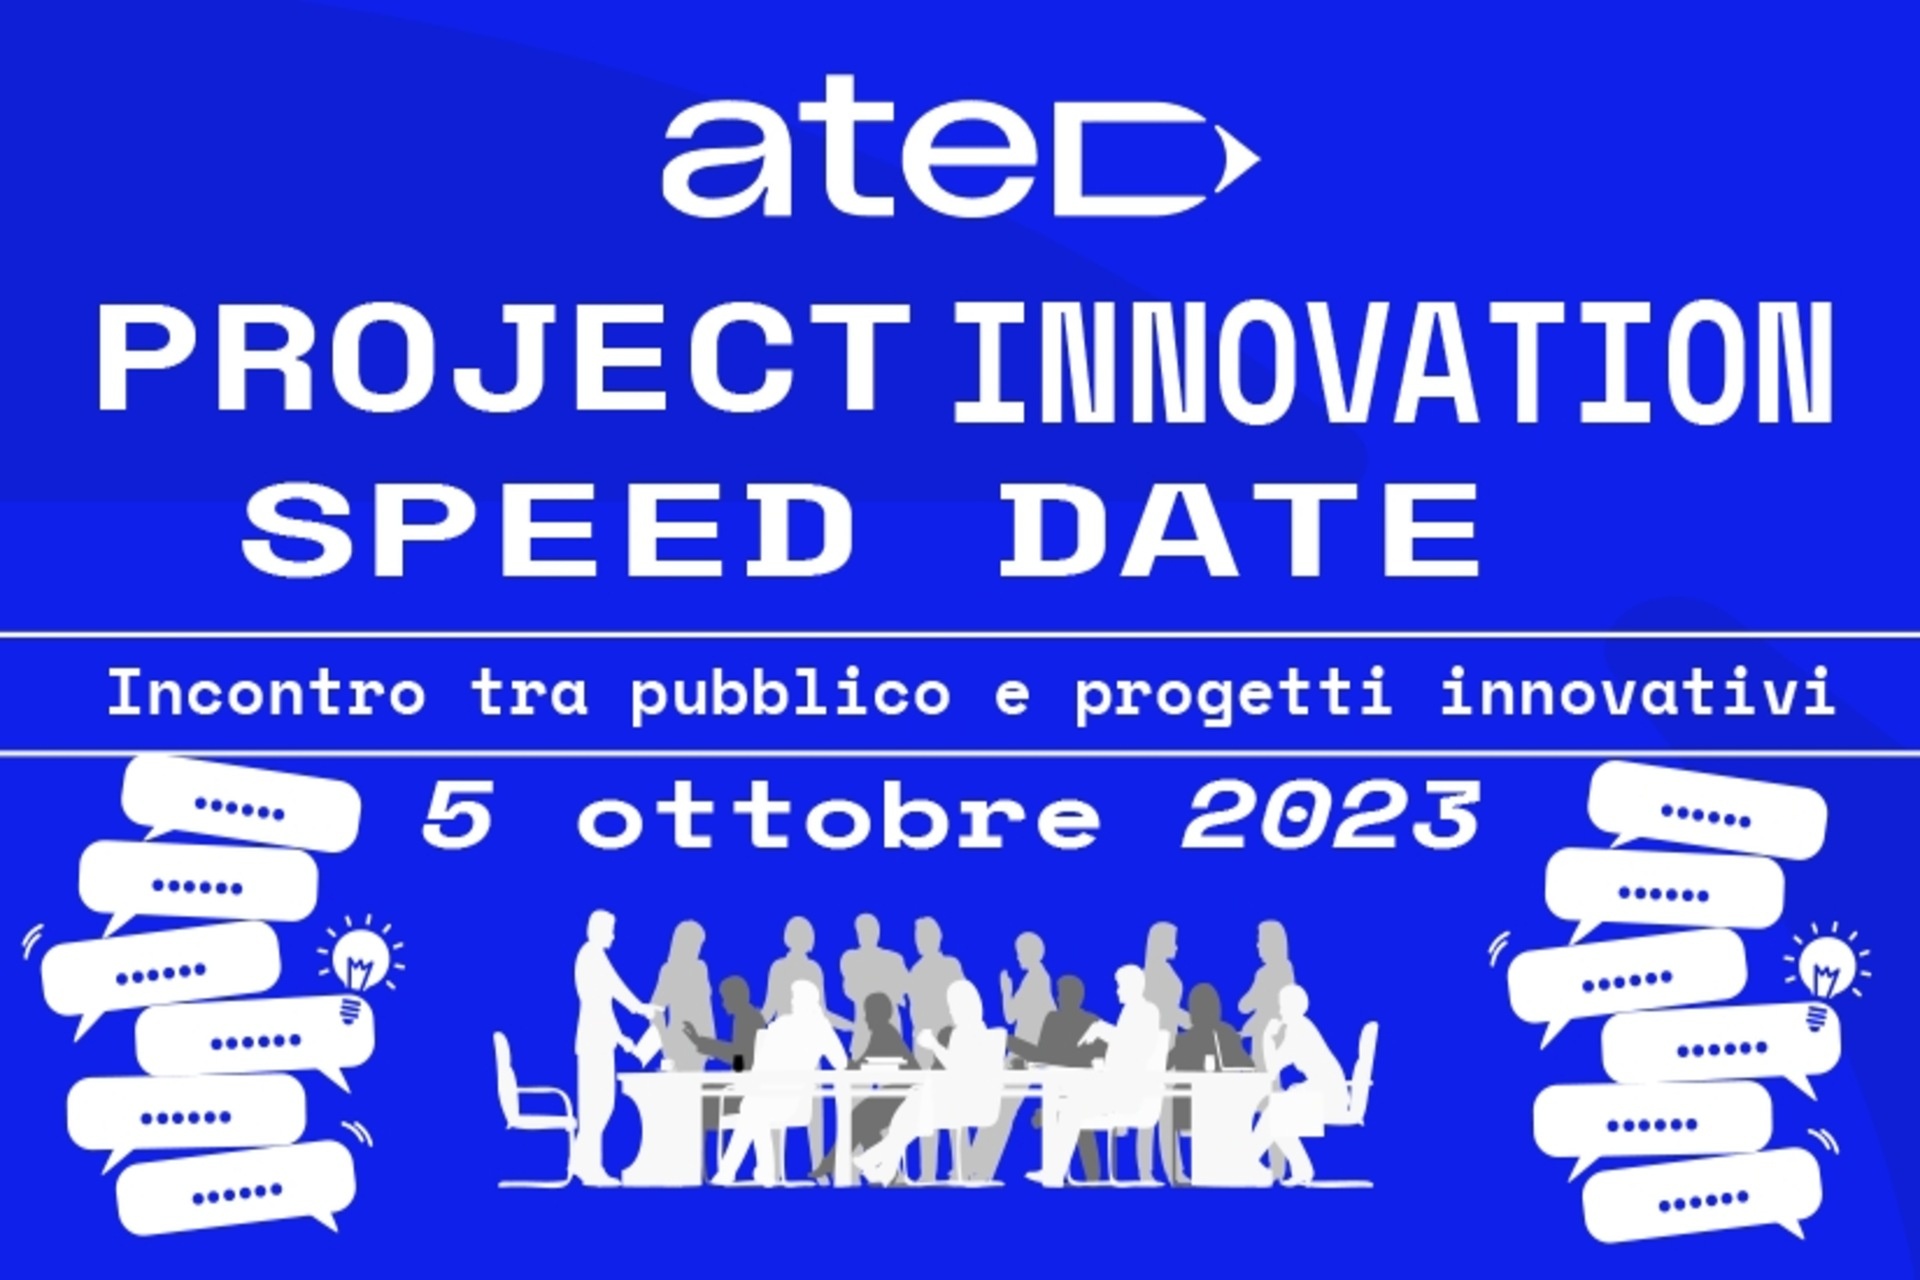 Dự án: poster của Ngày tốc độ đổi mới dự án ATED